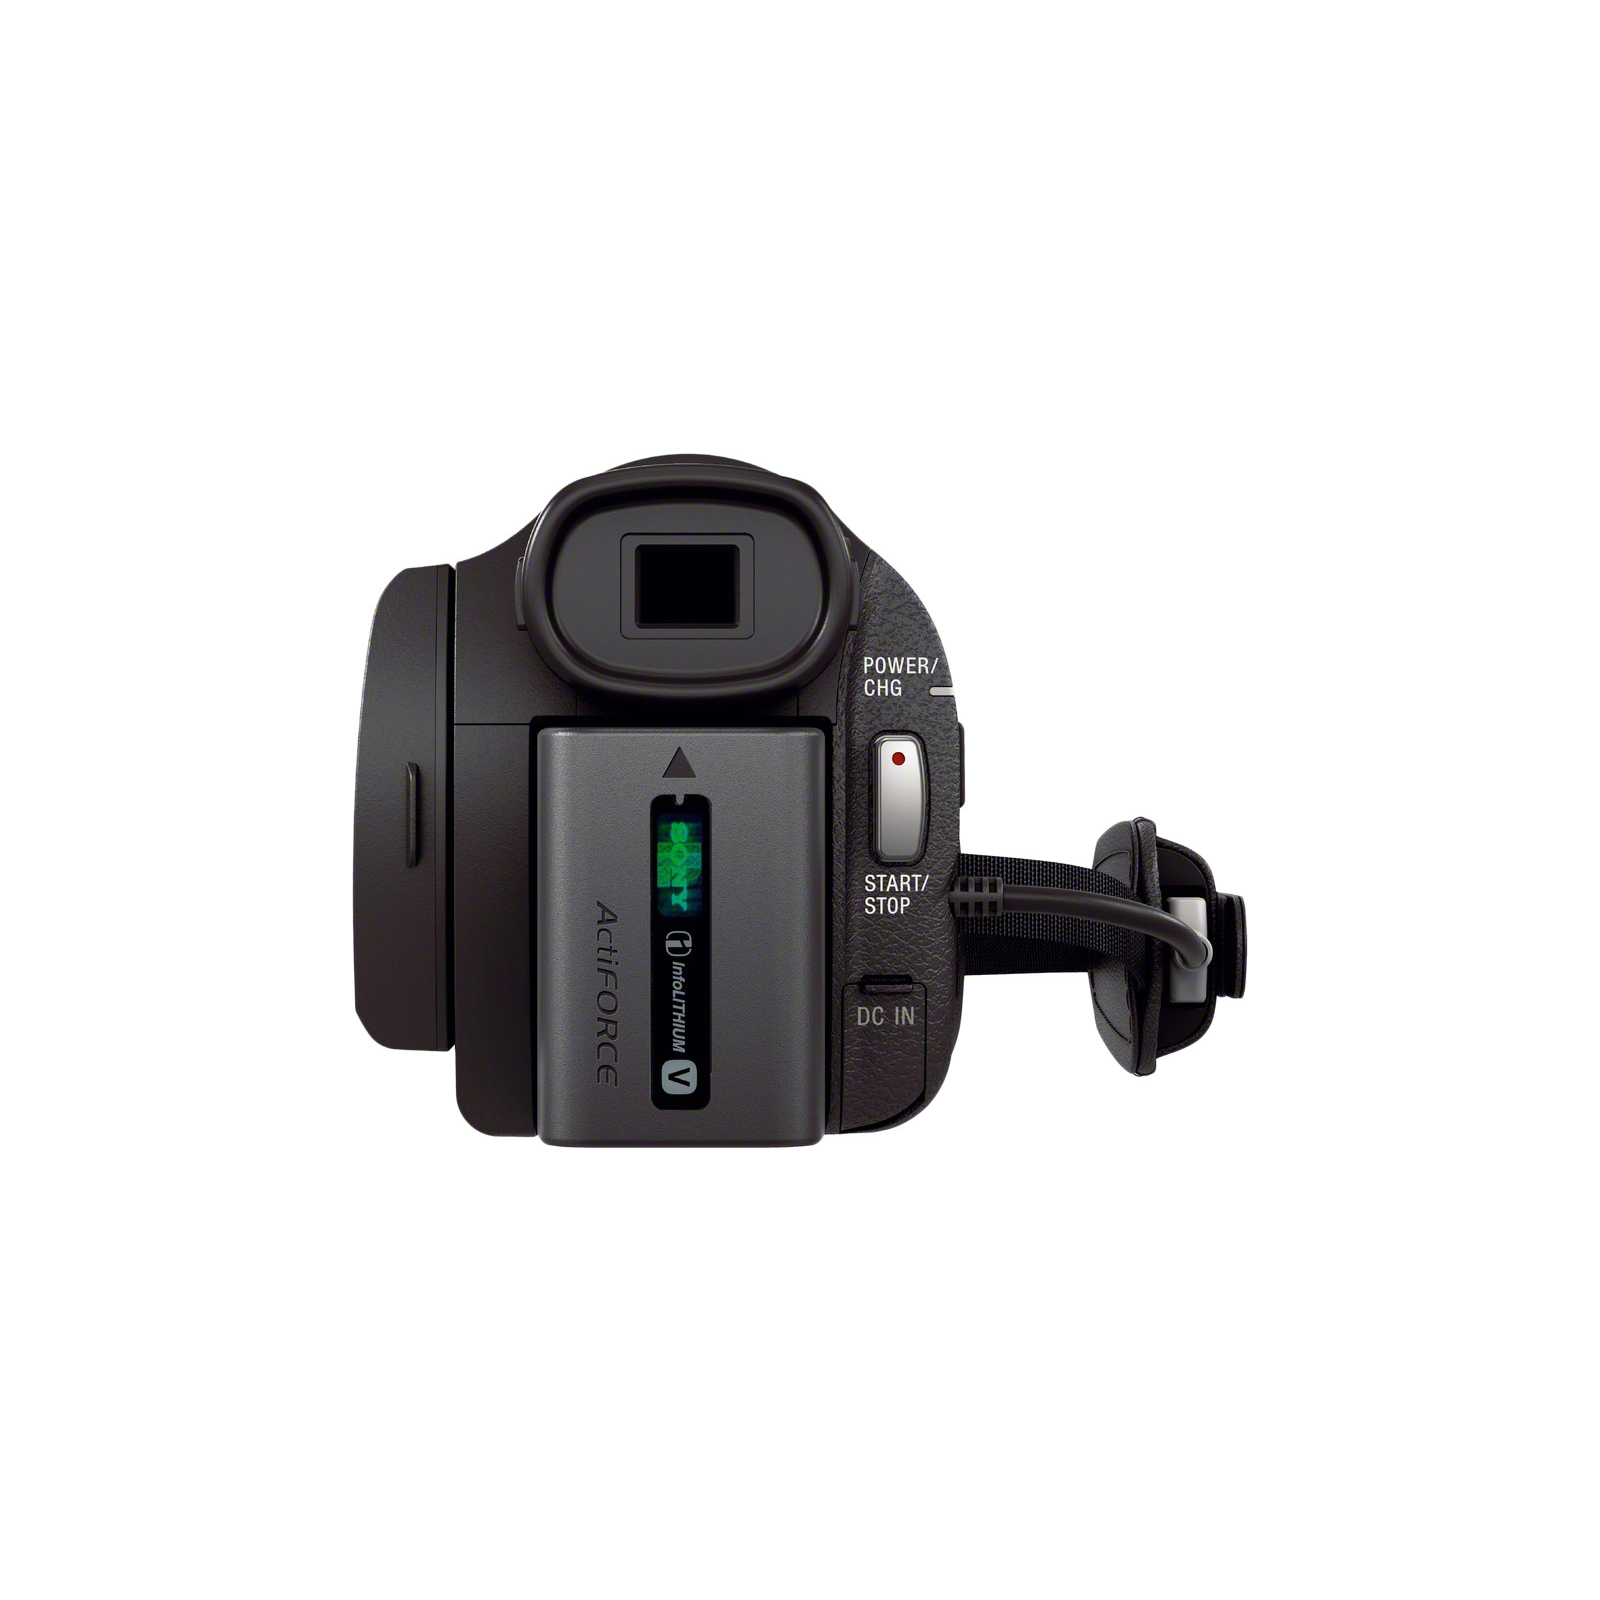 Цифровая видеокамера Sony Handycam FDR-AX33 Black (FDRAX33B.CEL) изображение 7